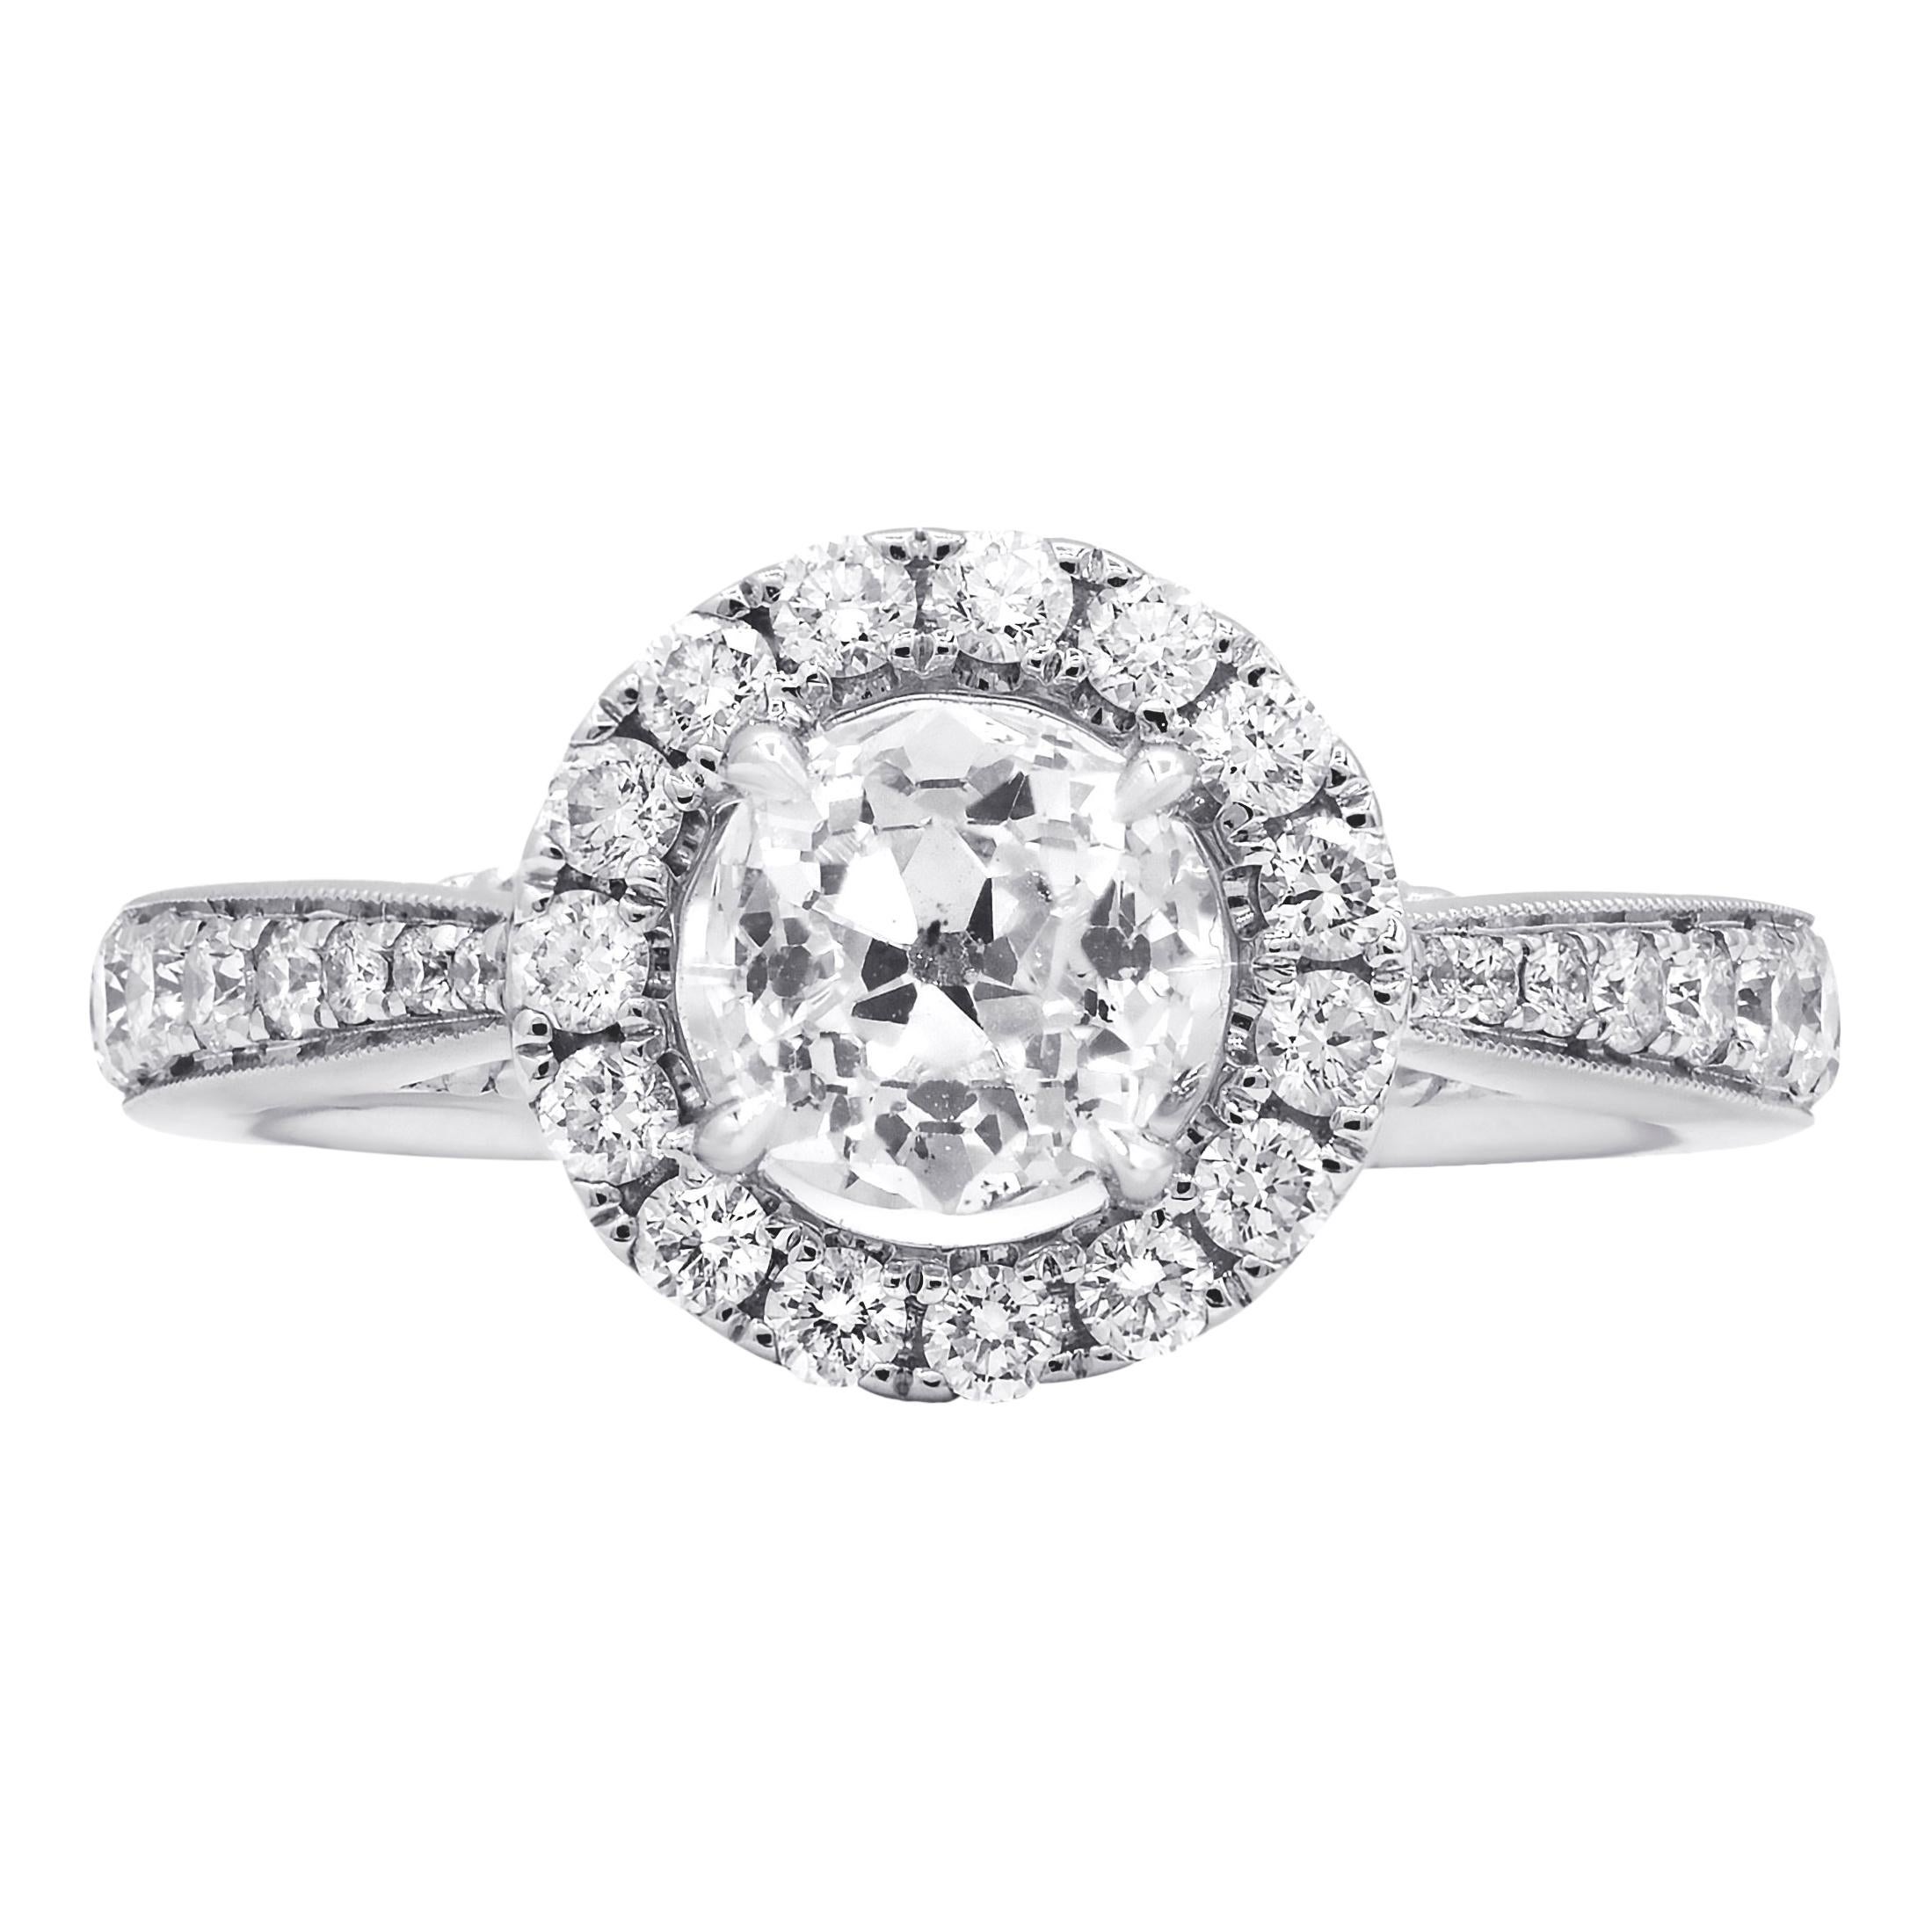 Diana M. Fine Jewelry 18k 1.55 Ct. Tw. Diamond Ring